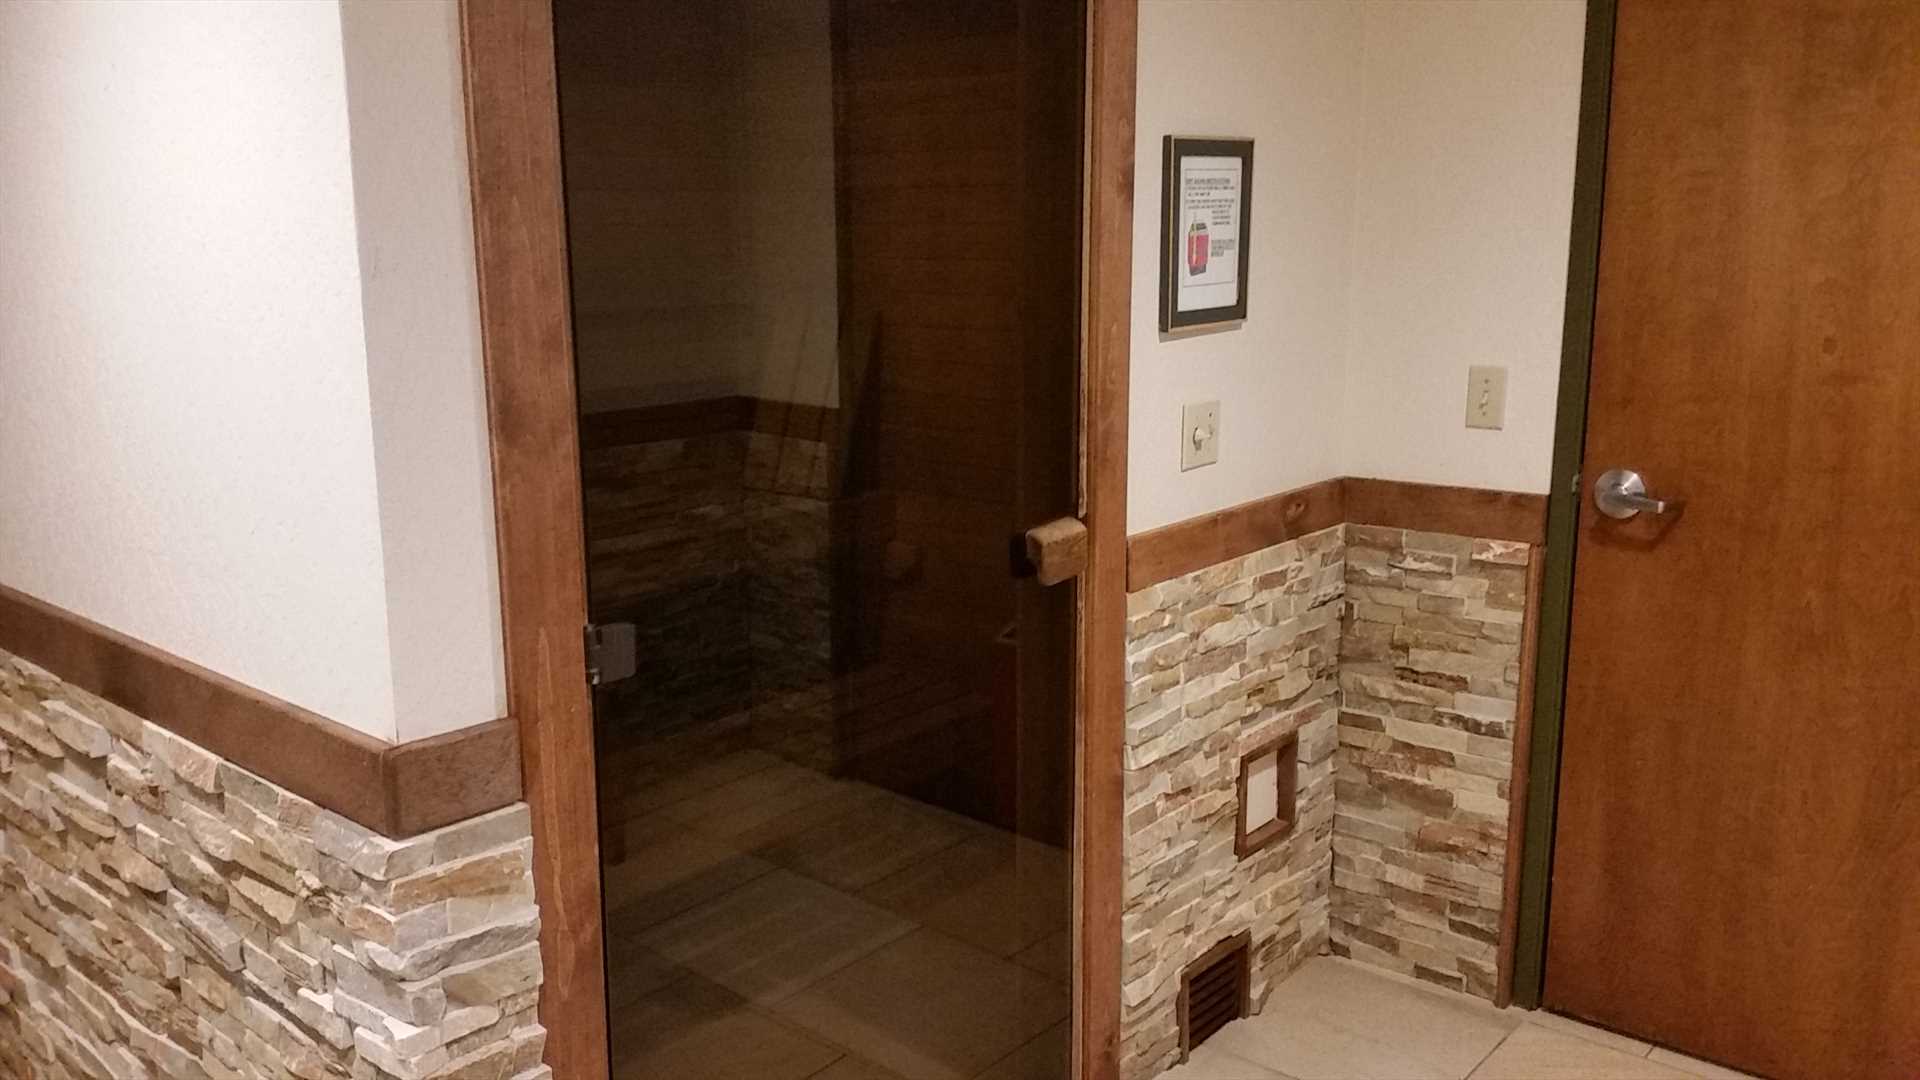 Lakeland Village sauna room near fitness room